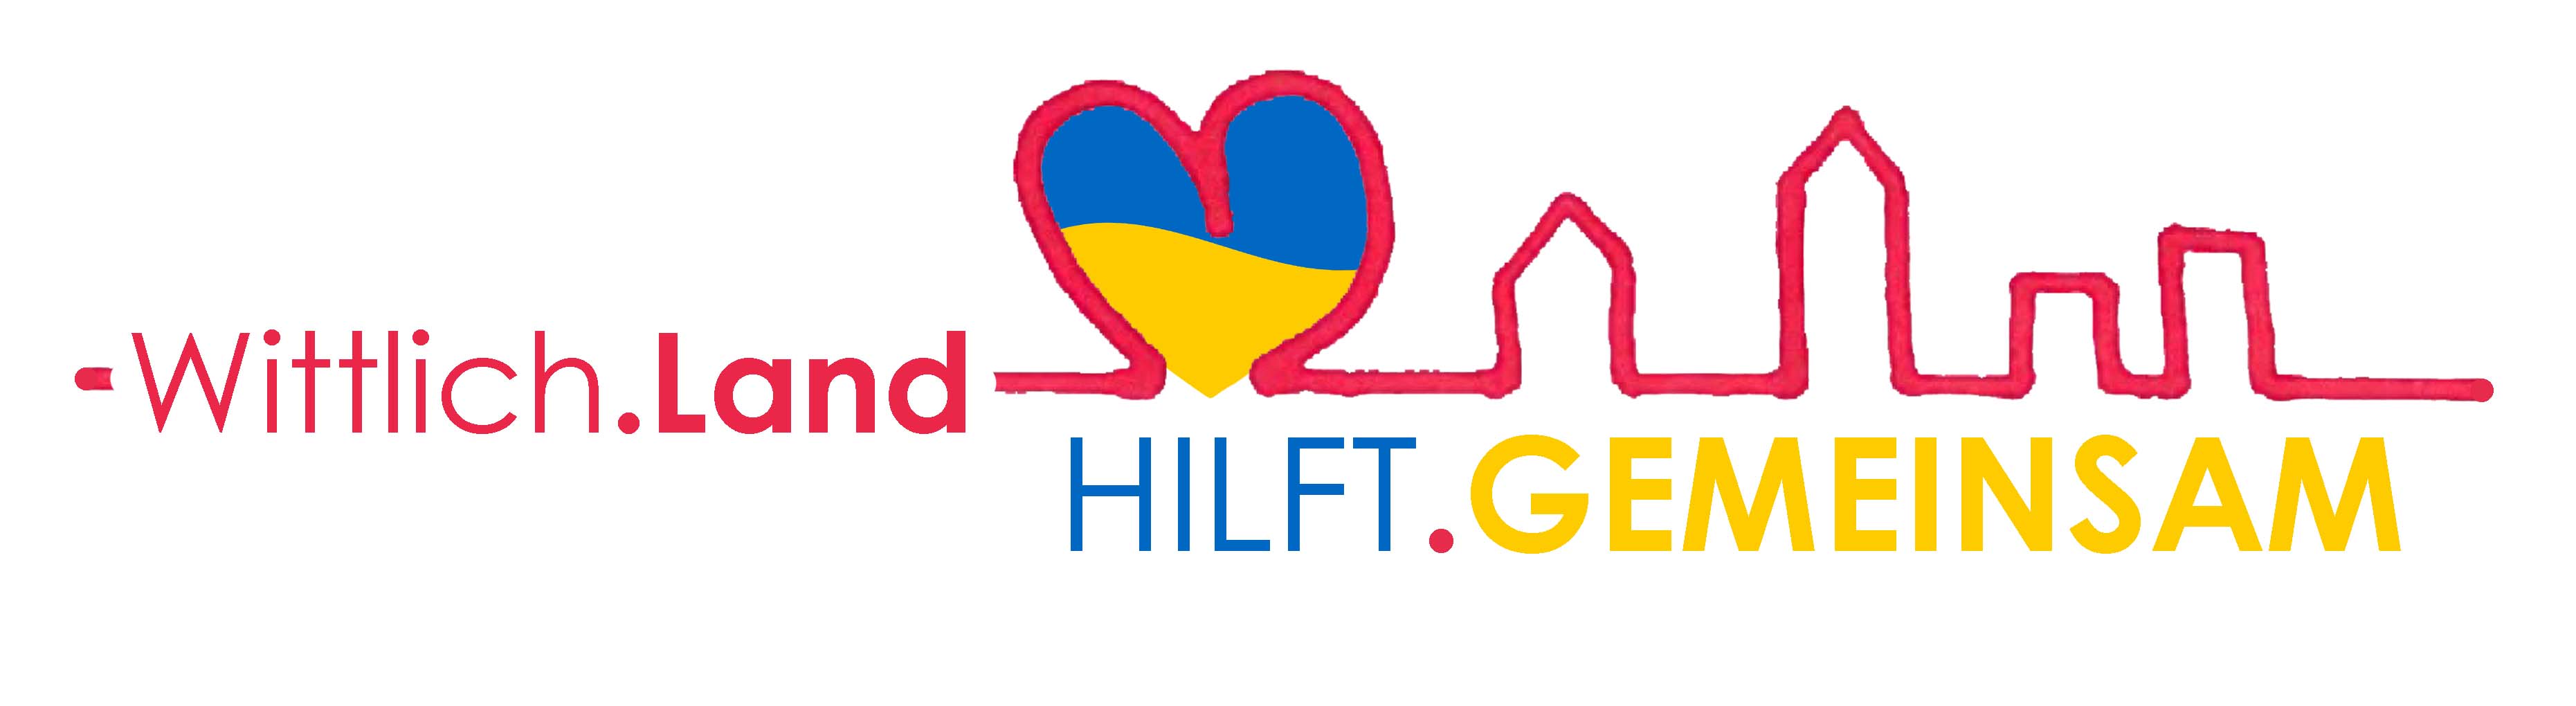 Logo Wittlich Land hilft gemeinsam